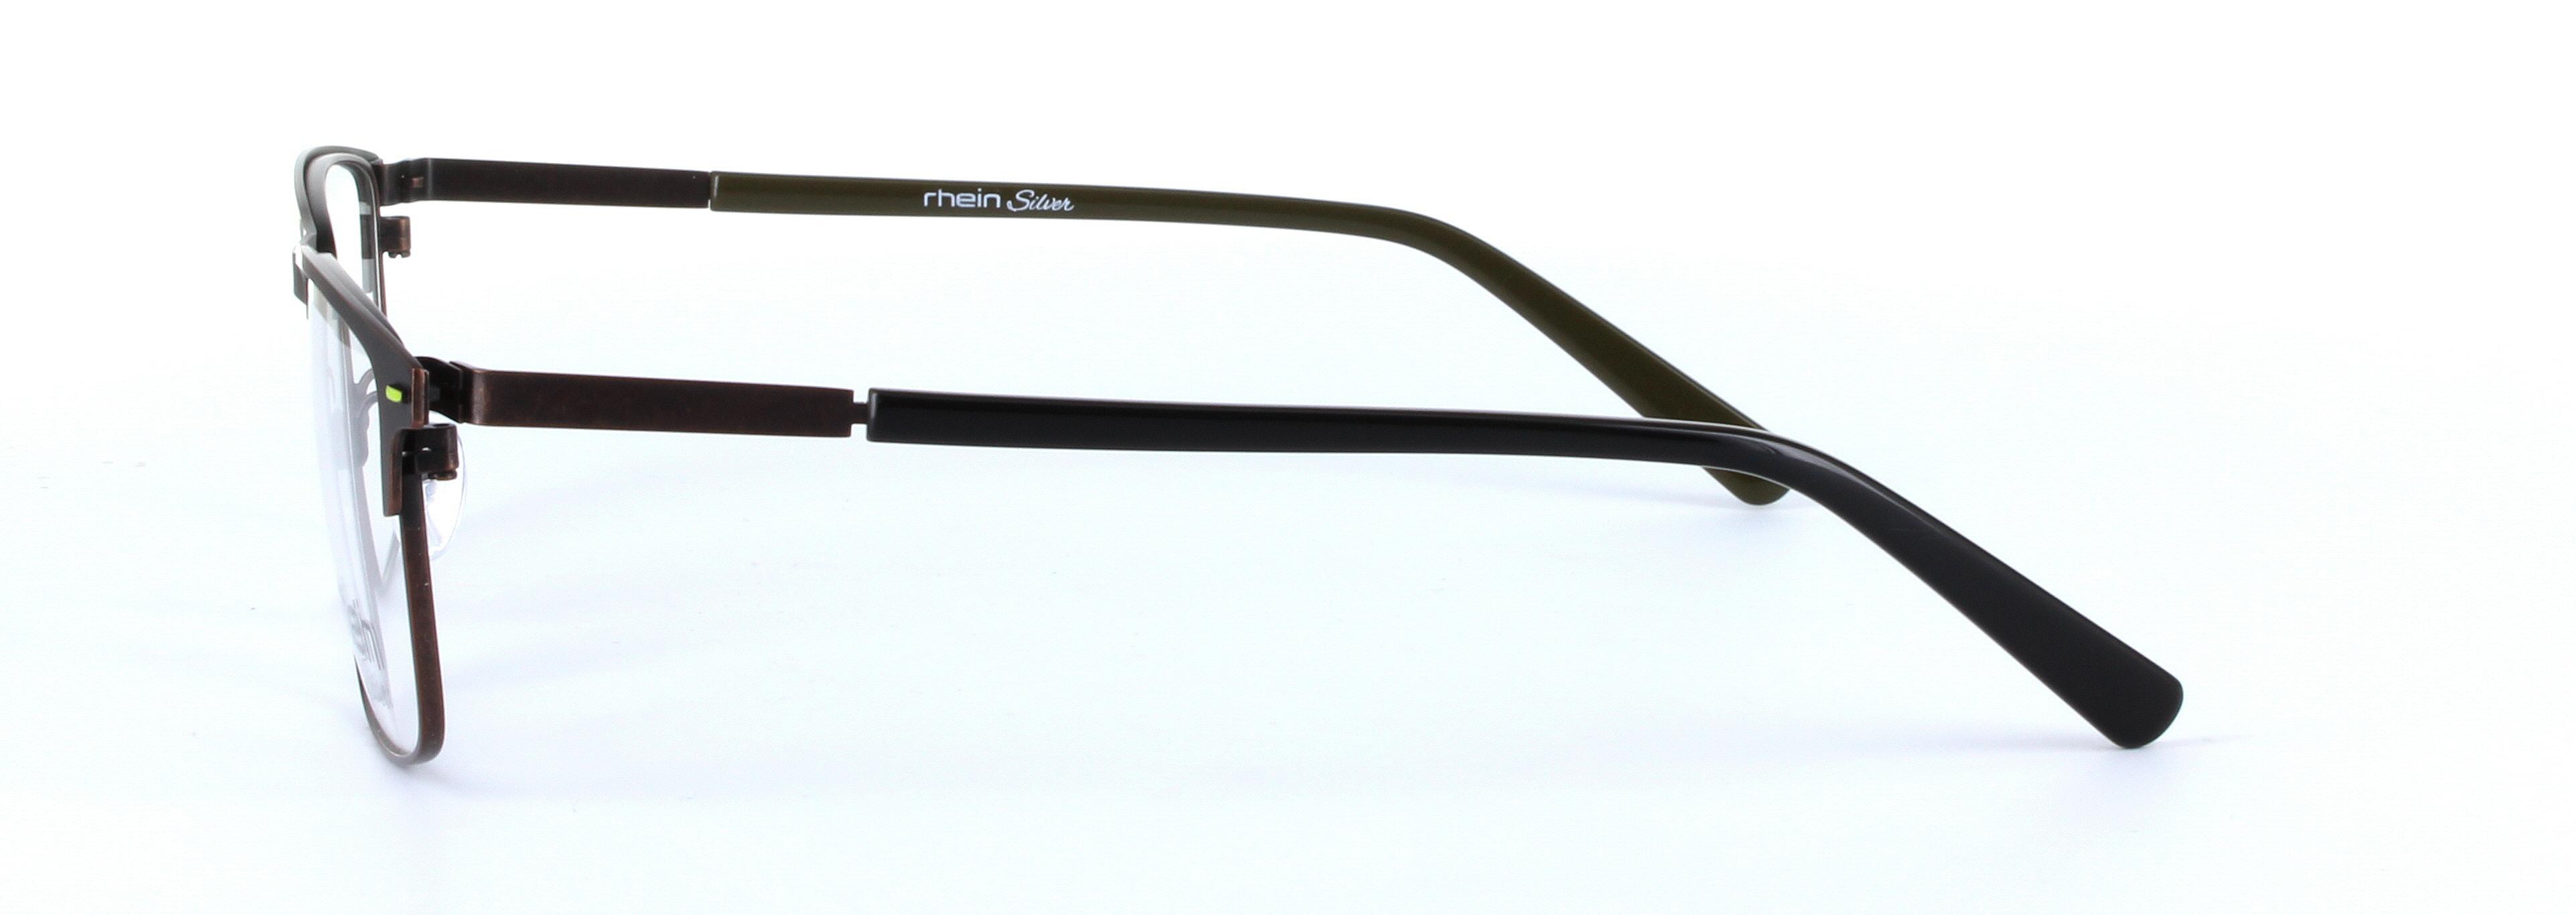 Aries Brown Full Rim Oval Metal Glasses - Image View 2